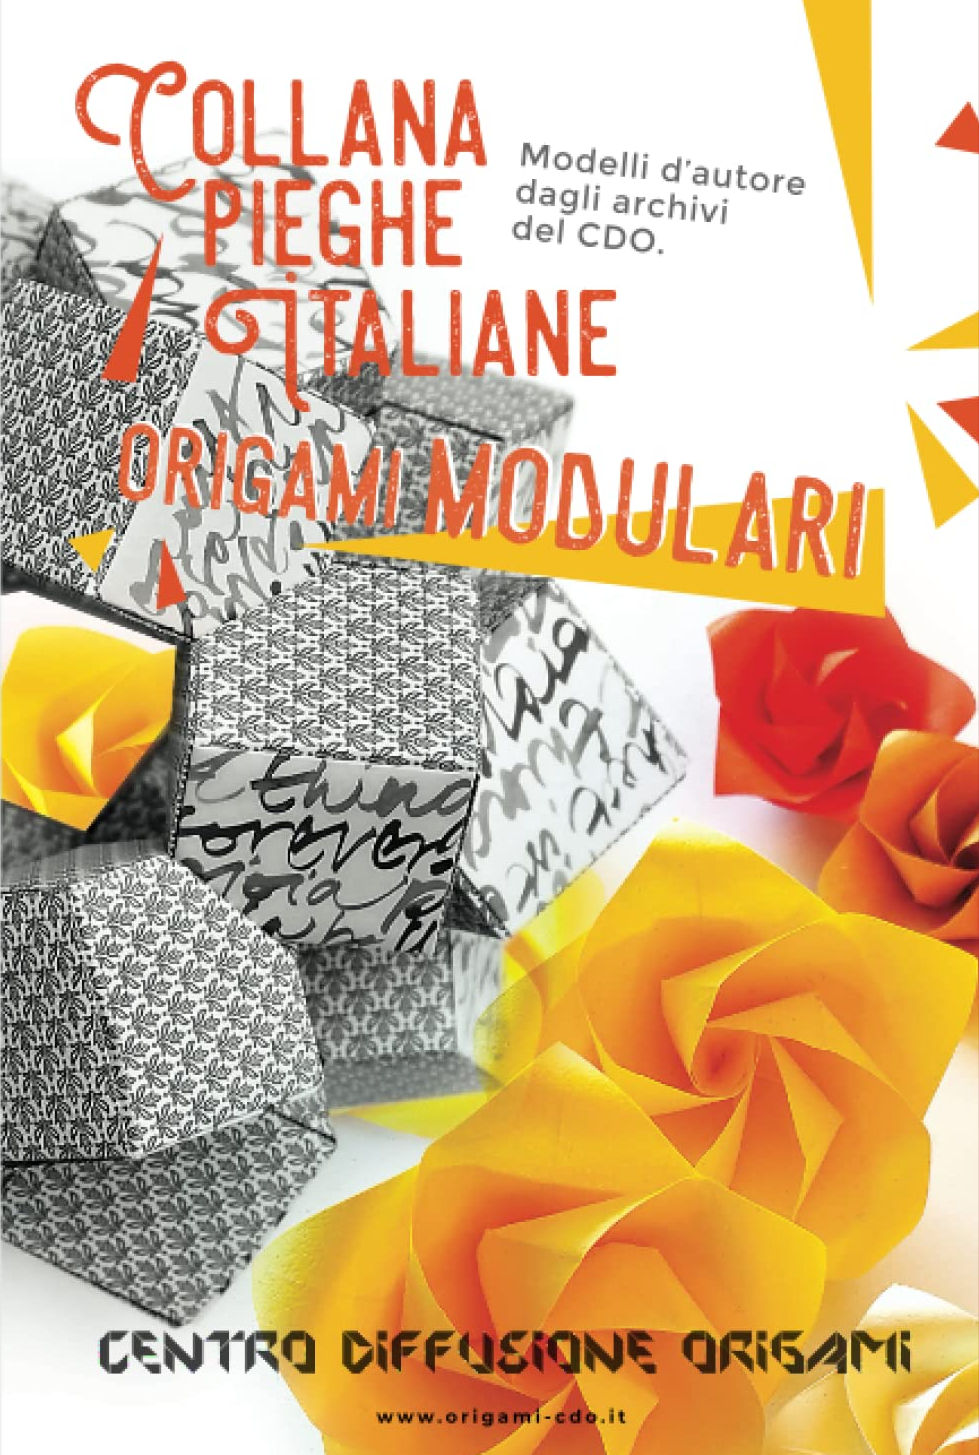 Collana pieghe Italiane - origami MODULARI : page 104.